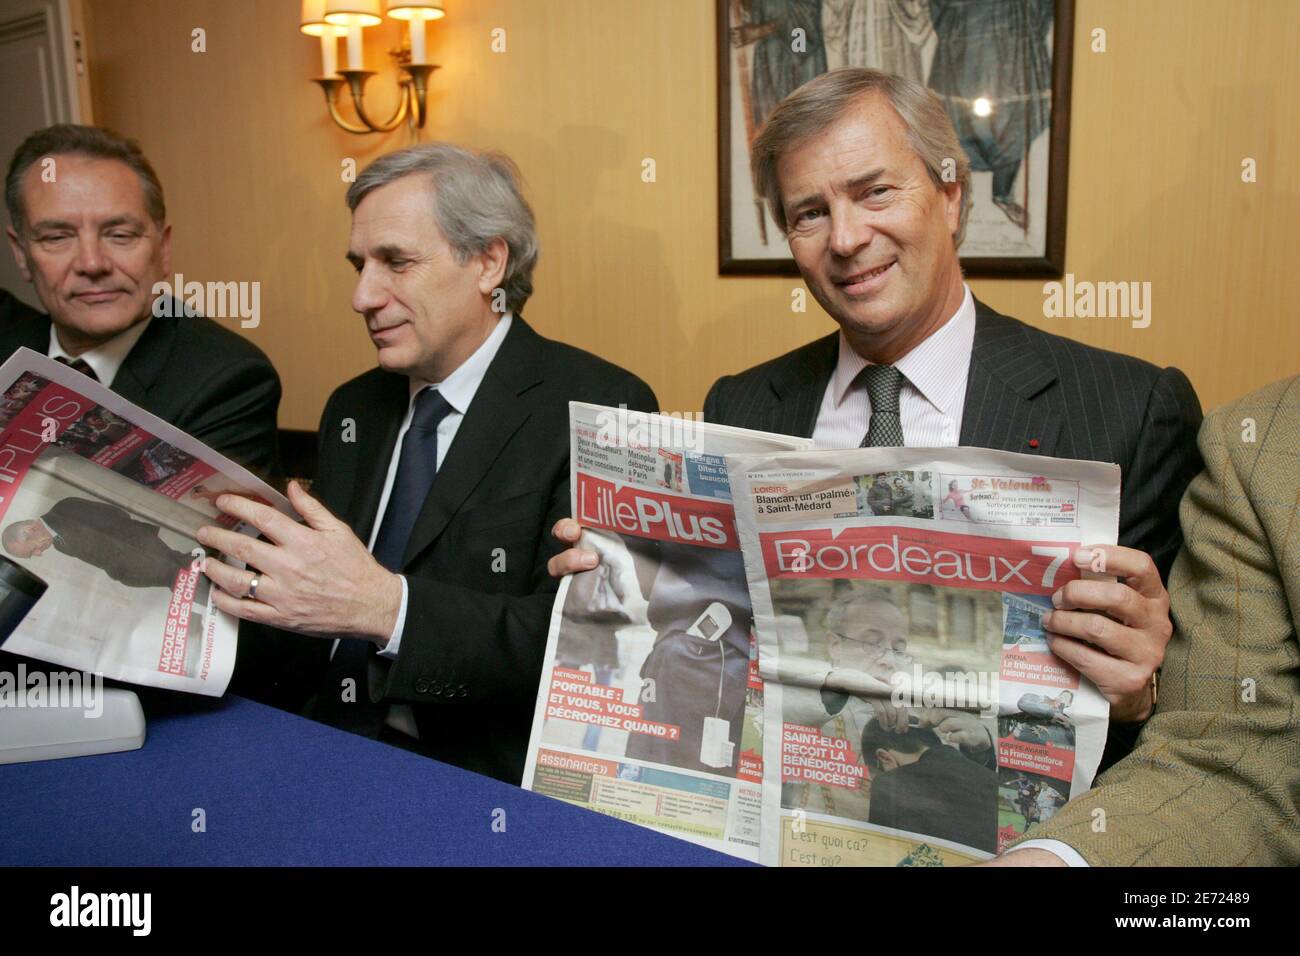 M. Jeantet, (DG le monde) Jean-Marie Colombani et Président du groupe  Bollore, Vincent Bollore tiennent une conférence de presse à Paris le 6  février 2007 pour présenter un nouveau journal gratuit "Matin